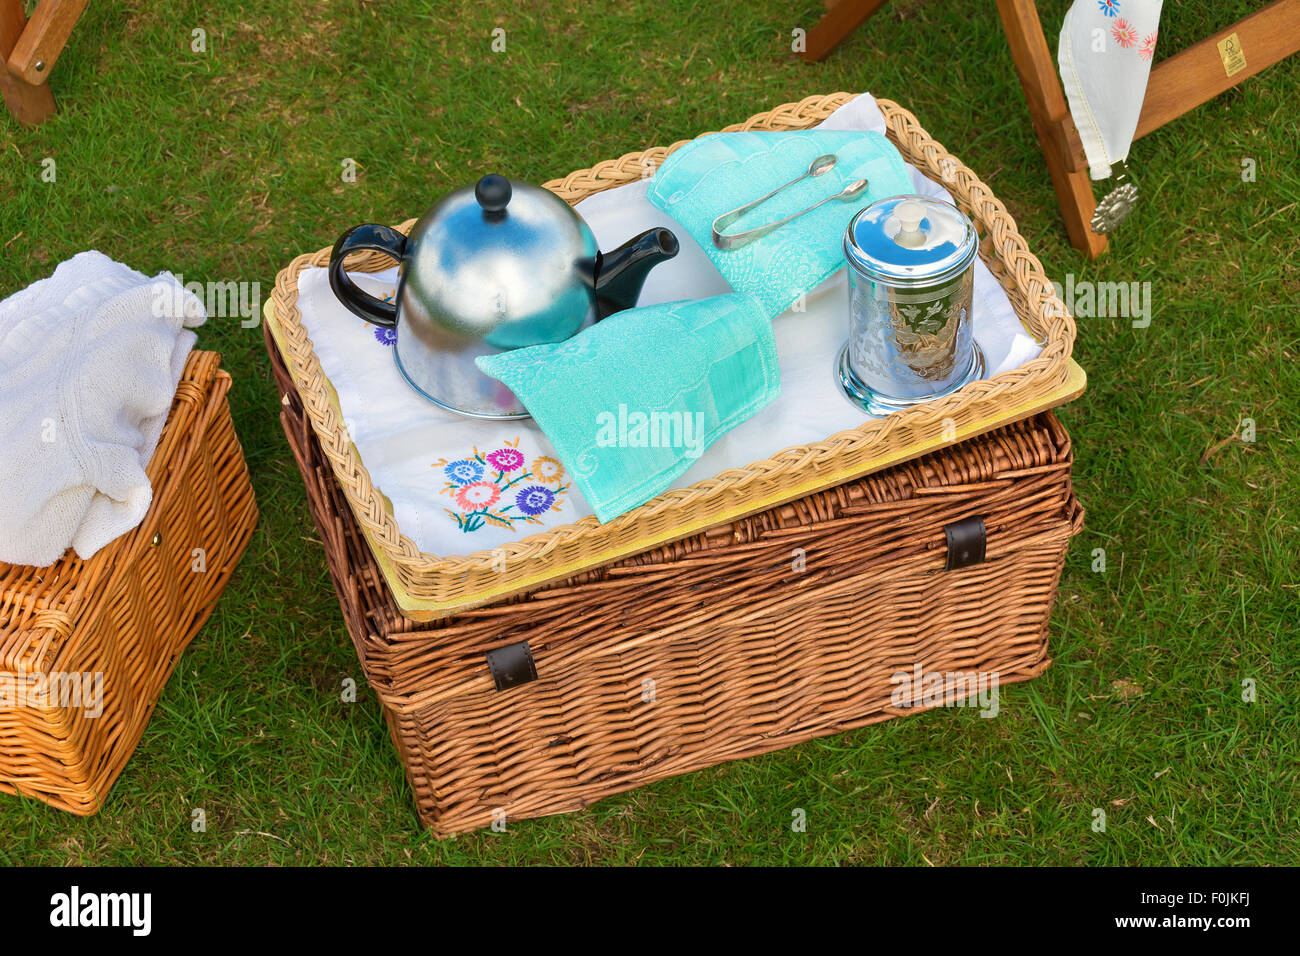 Picknick im freien-Tablett mit Teekanne auf einen Weidenkorb Stockfoto